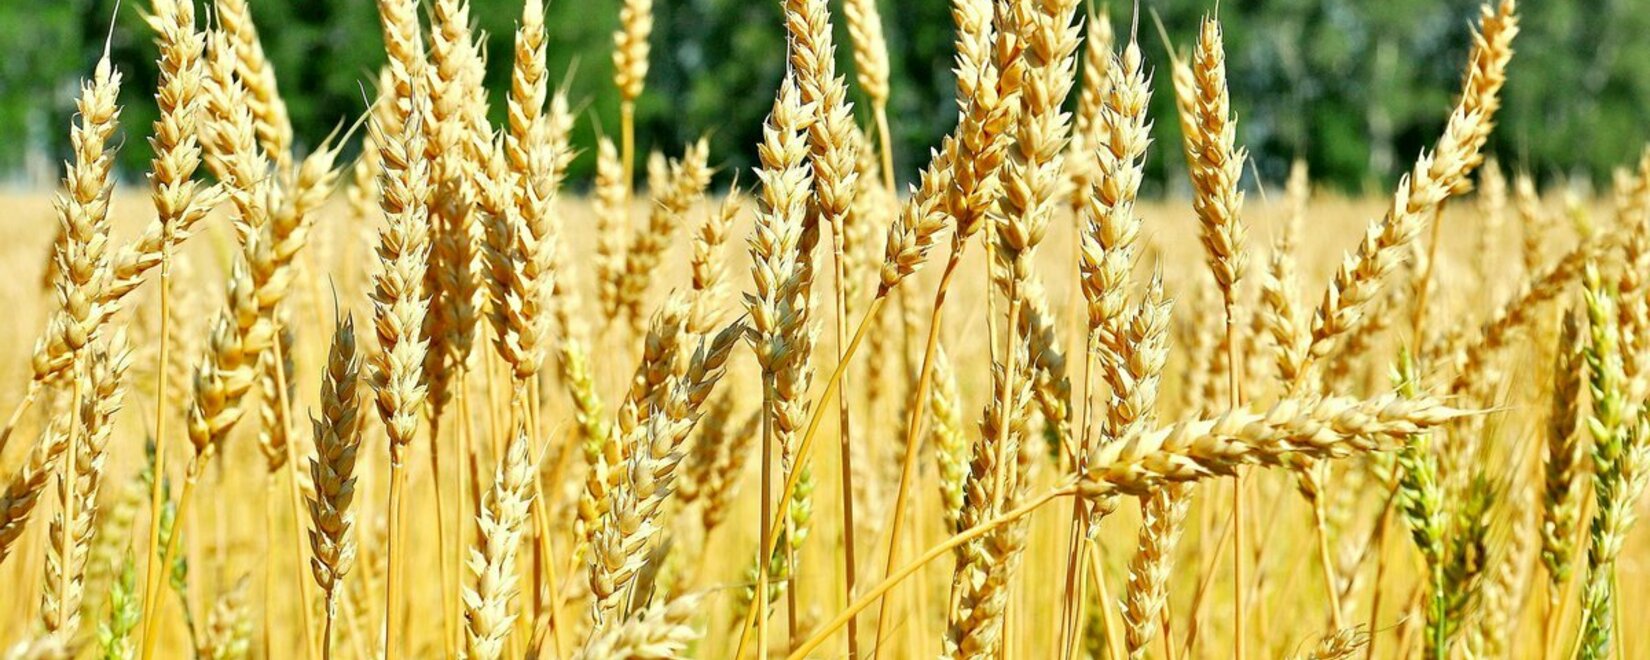 Восстановление импорта украинского зерна в Болгарии